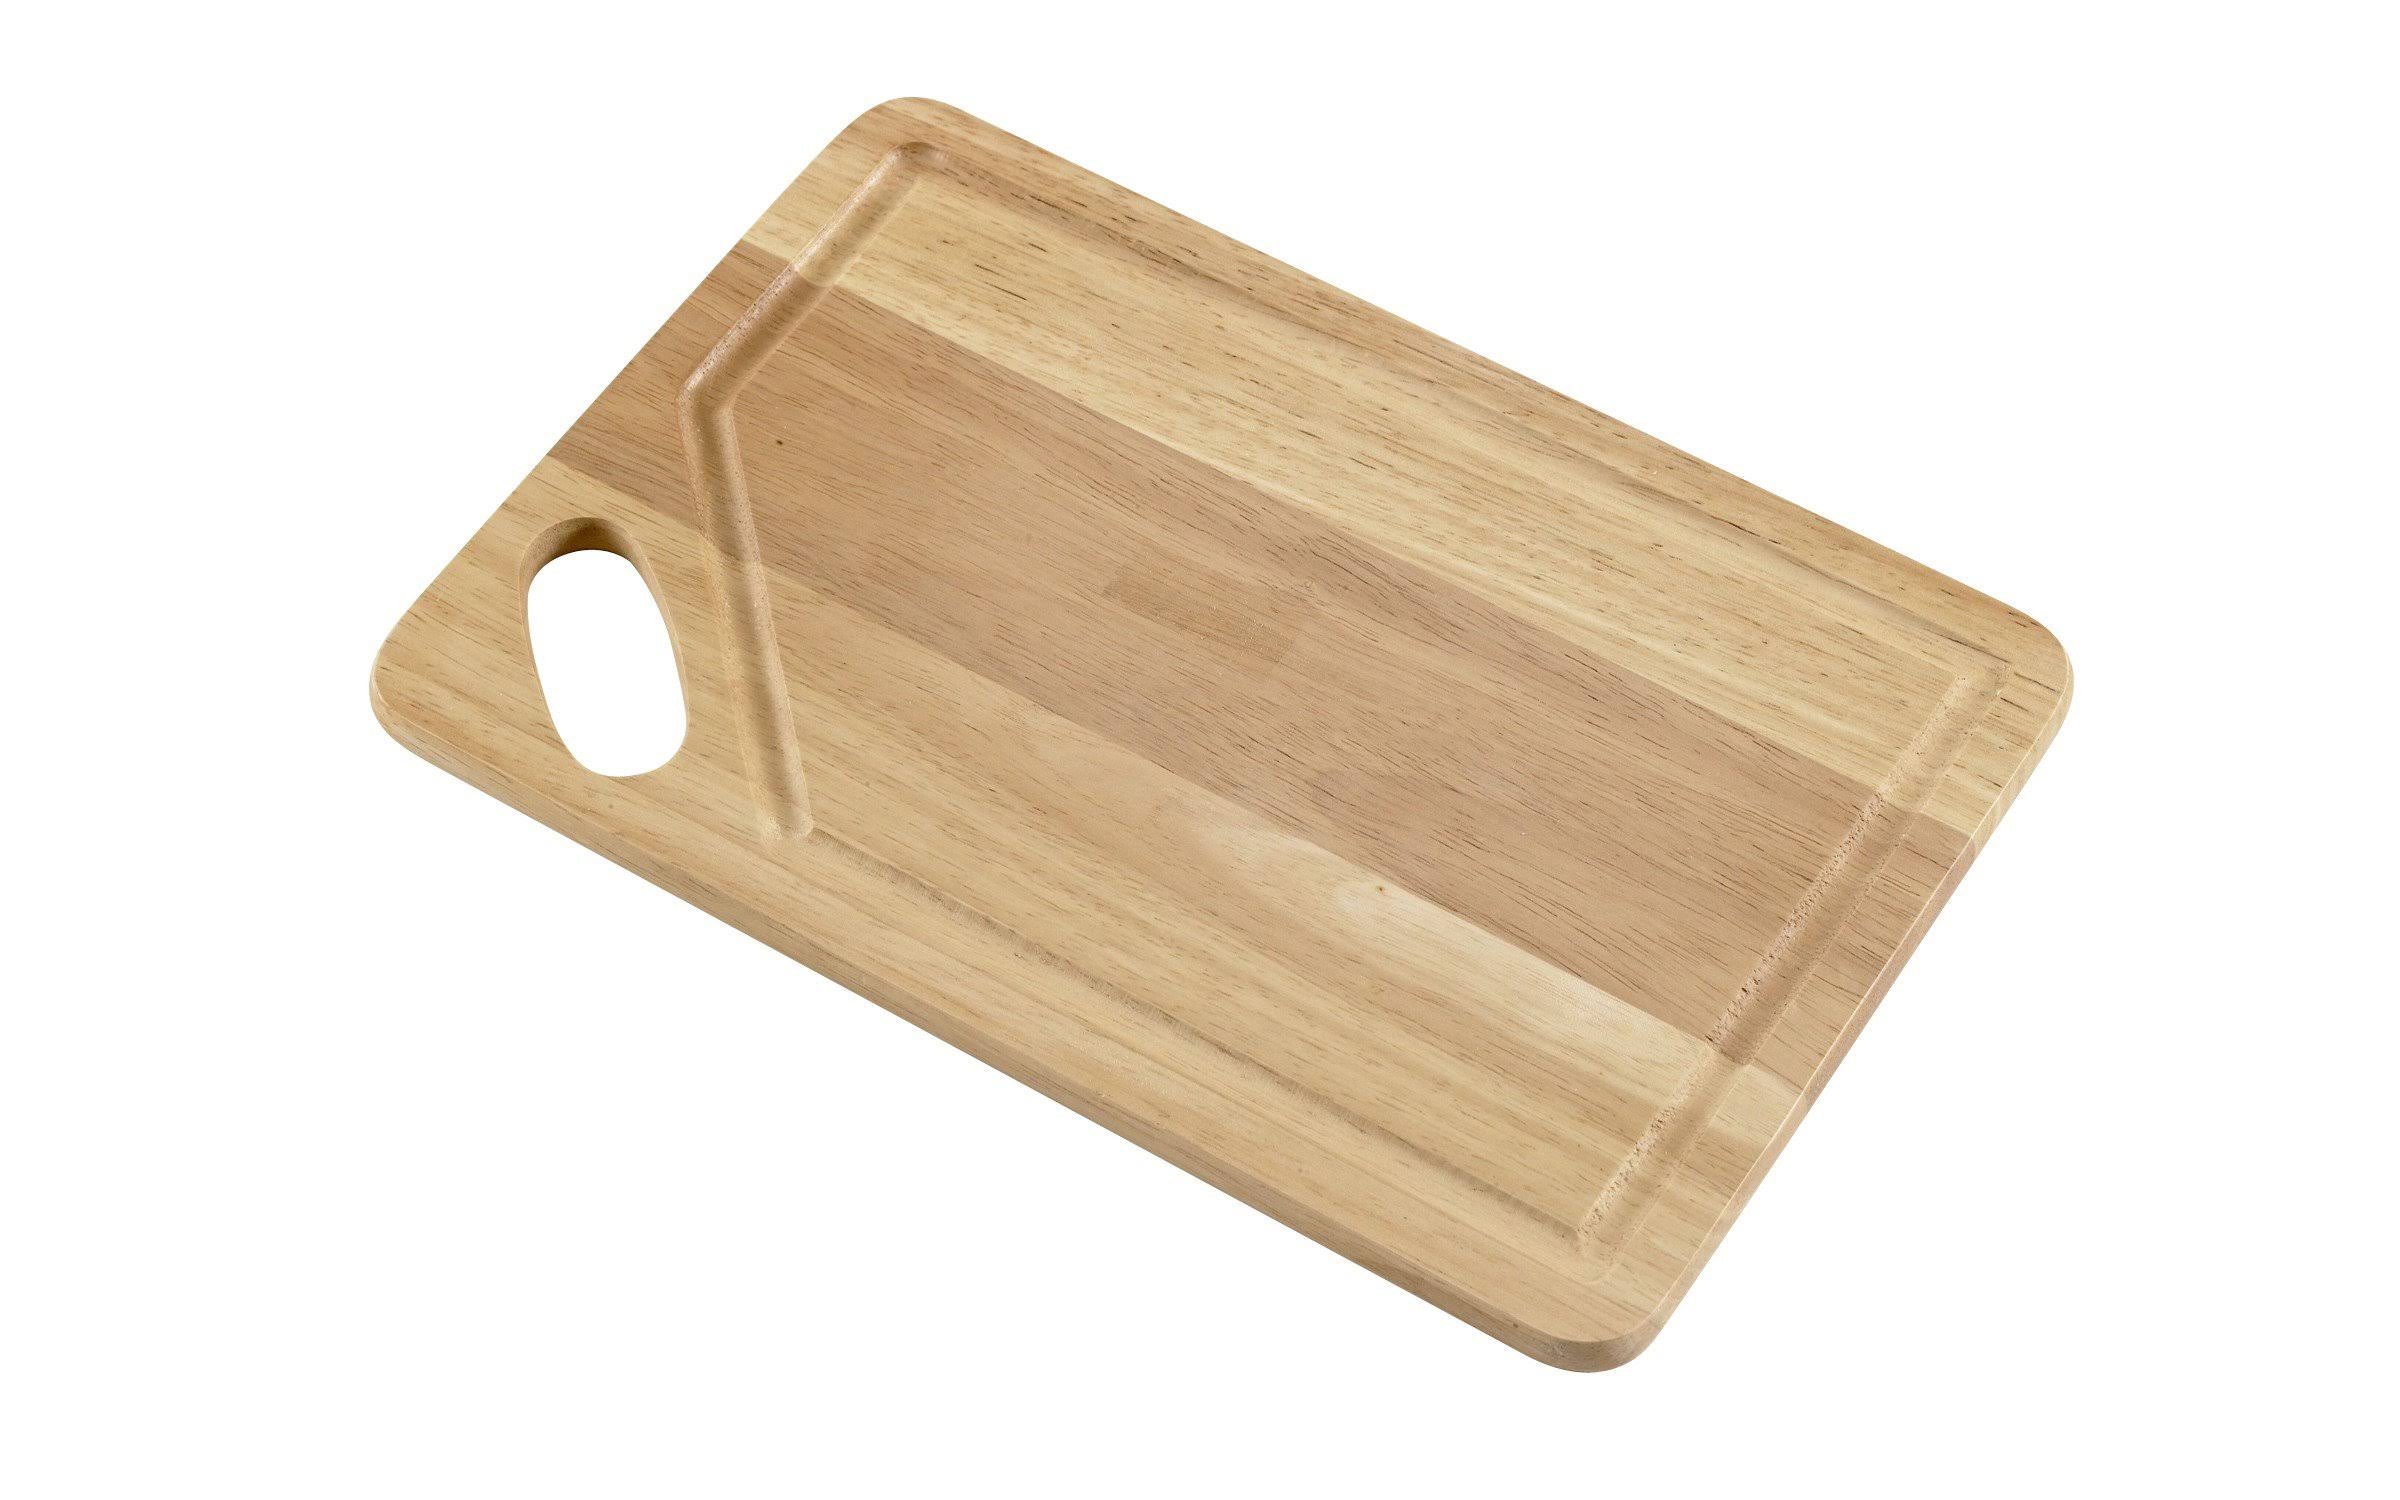 Good Cook Wood Cutting Board - 8" x 12"